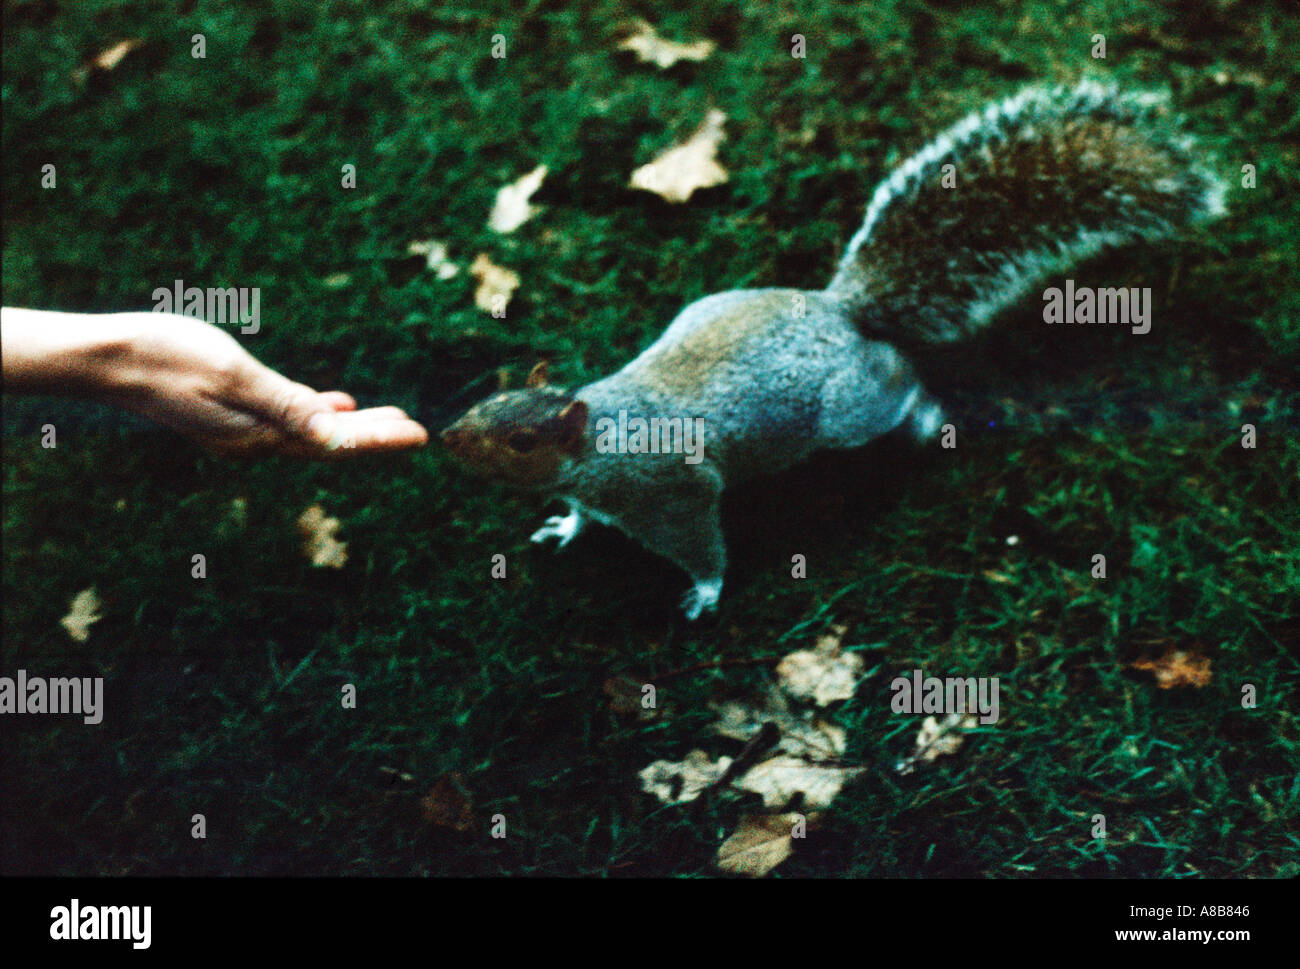 Granulosa impressionistica immagine di uno scoiattolo vicino ad una mano umana Foto Stock